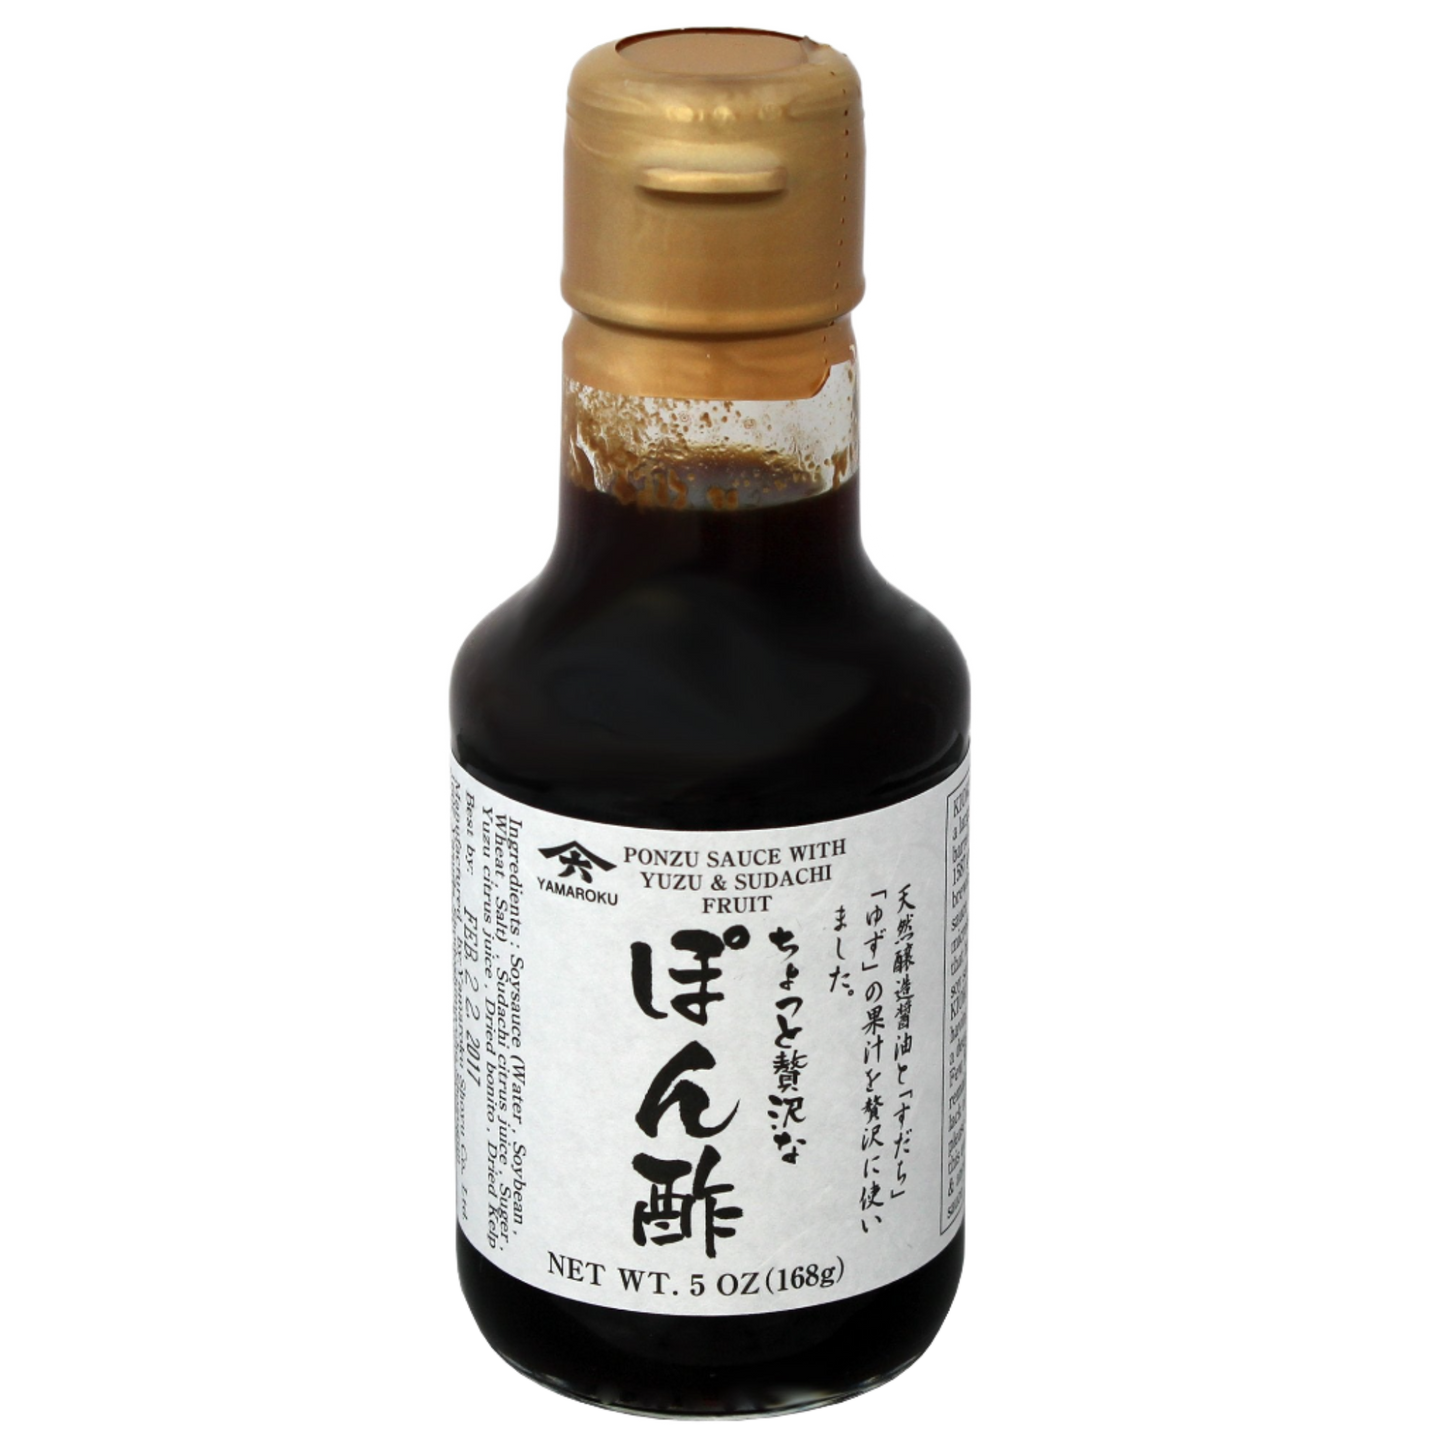 Soy Sauce w/ Yuzu & Saduchi Fruit (Ponzu), 5oz (148ml)